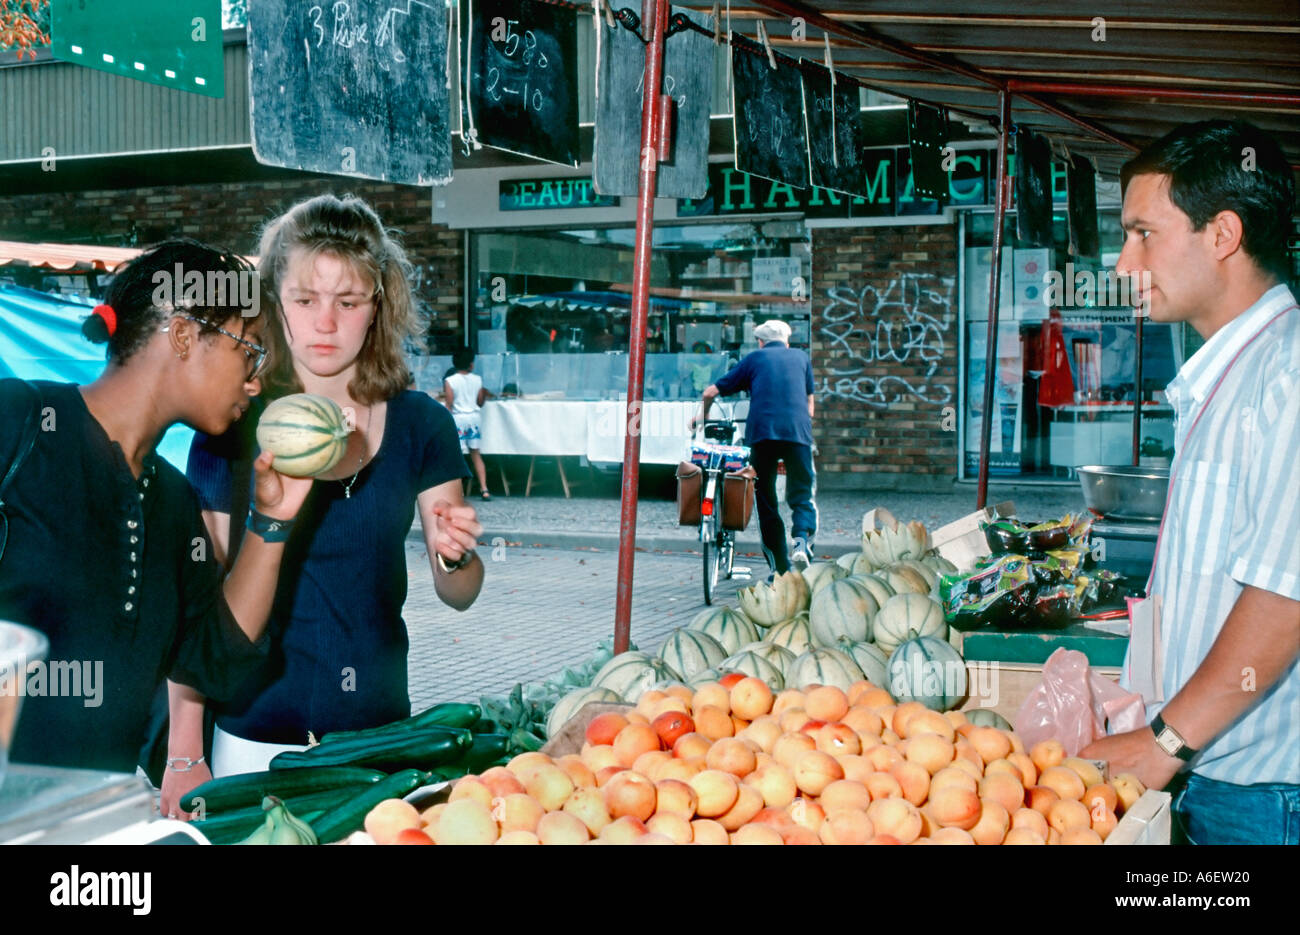 France Girls Shopping vielfältige französische weibliche Teenager im Outdoor Farmers Market auf der Straße Vendor, frisches Obst, Lebensmittelpreise, gesundes Essen Stockfoto